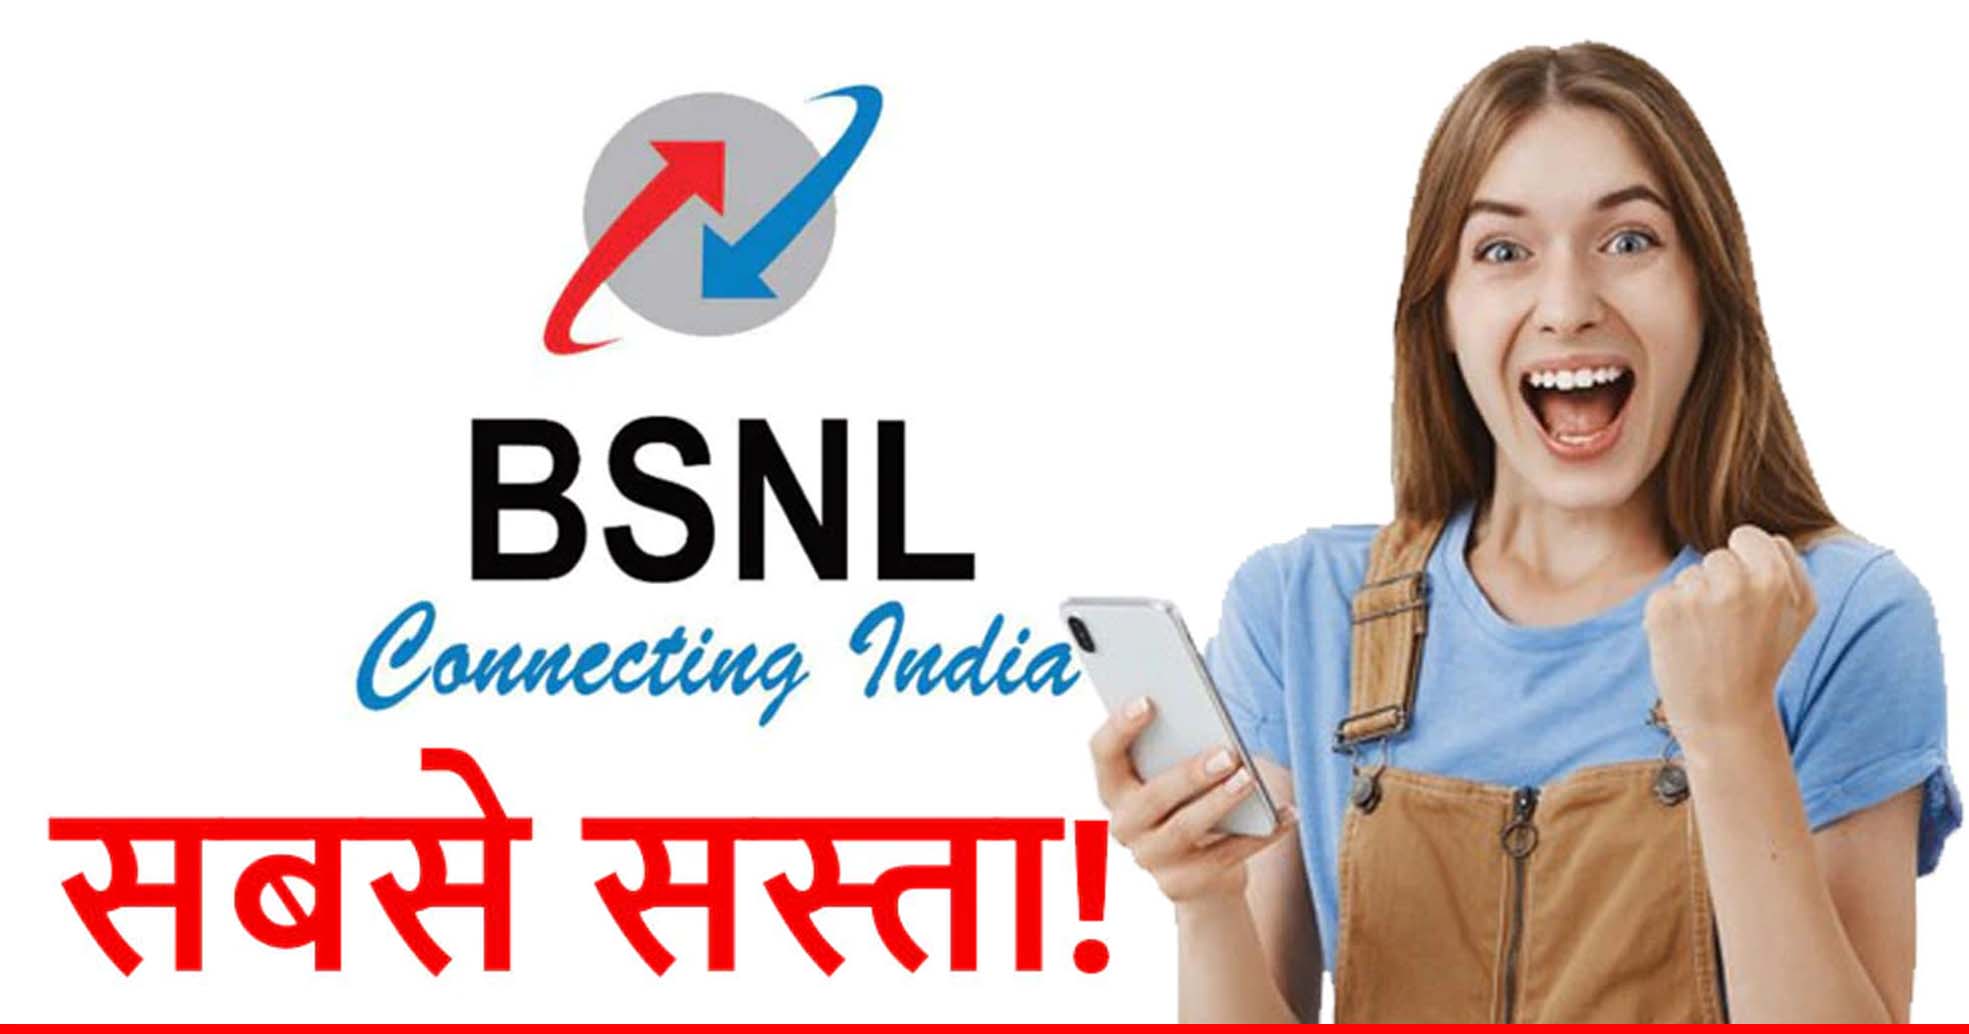 BSNL का सस्ता प्लान! सिर्फ 97 रुपये में मिलता है 36GB डेटा और फ्री कॉलिंग